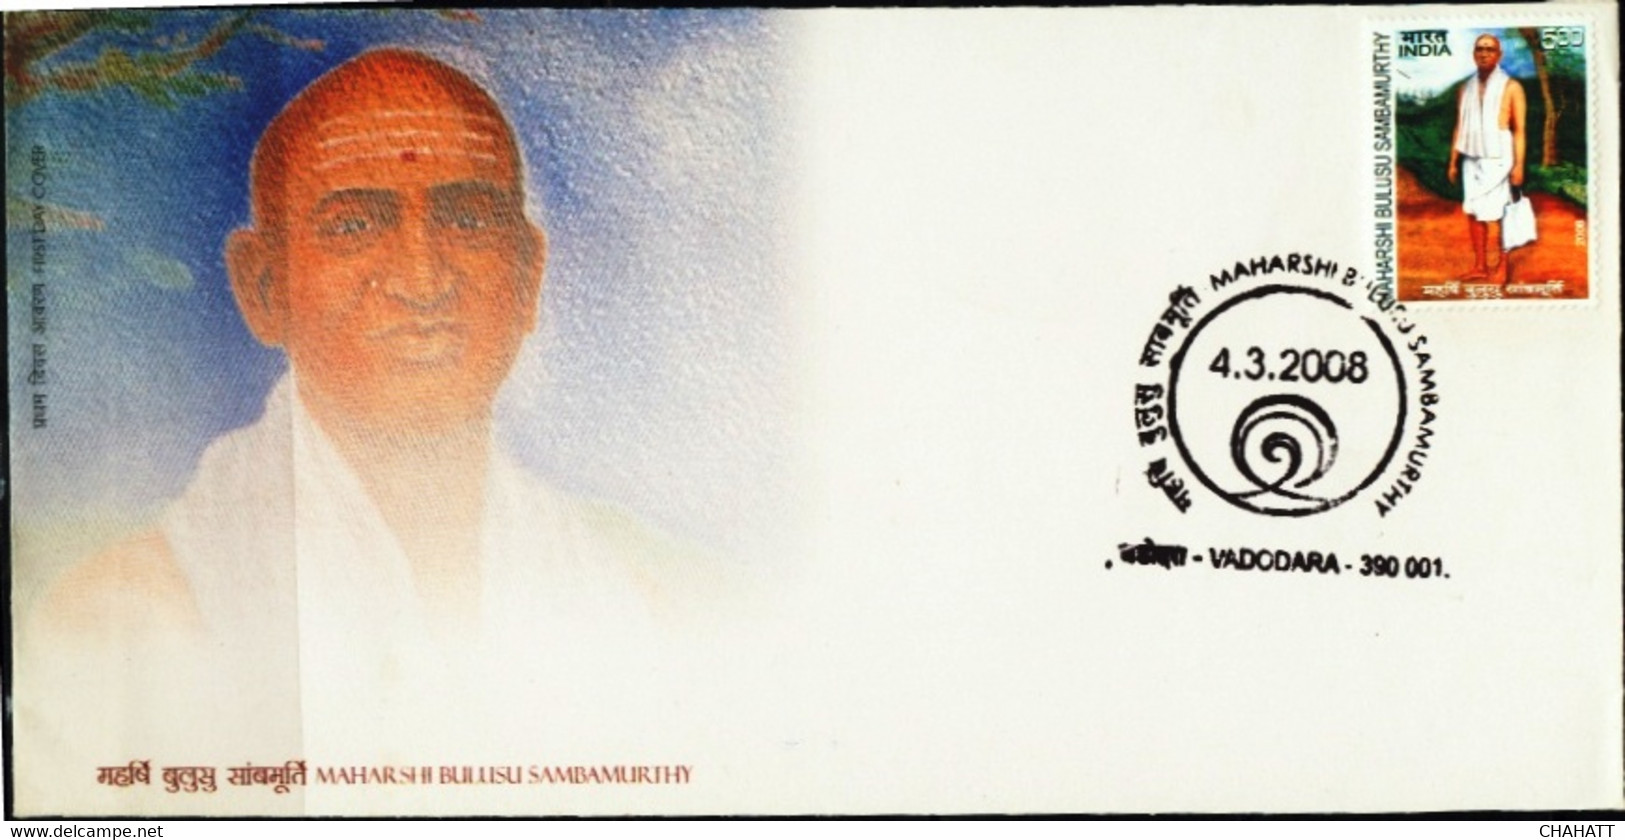 HINDUISM-SAGE MAHARSHI B SAMBAMURTHY- FDC-INDIA-2008 -BX3-36 - Hinduism